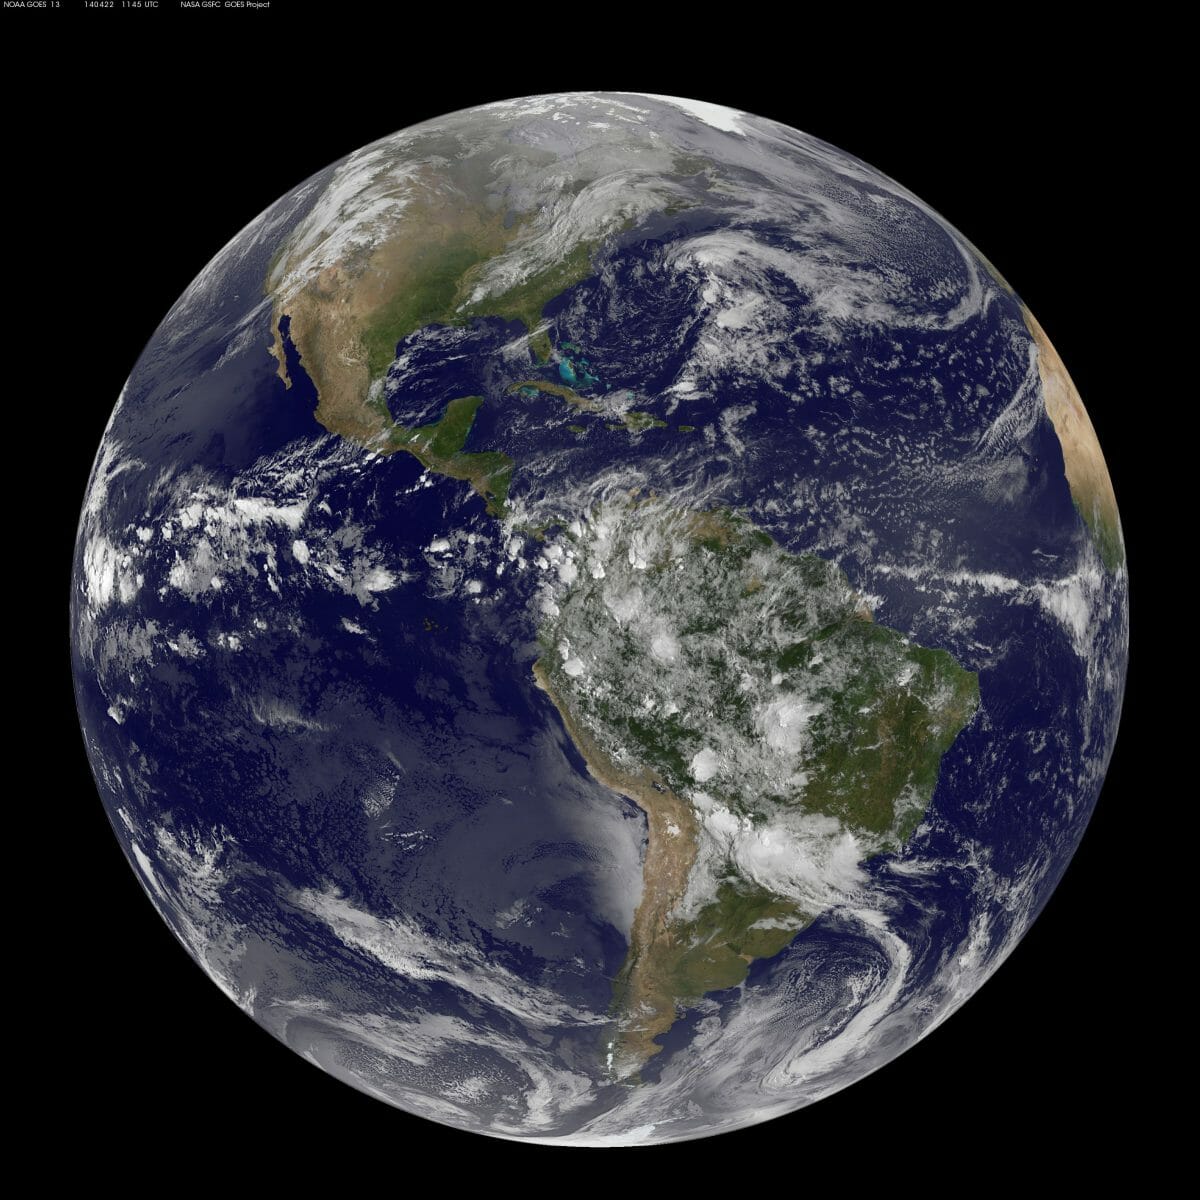 GOES-East衛星により撮影された地球の画像